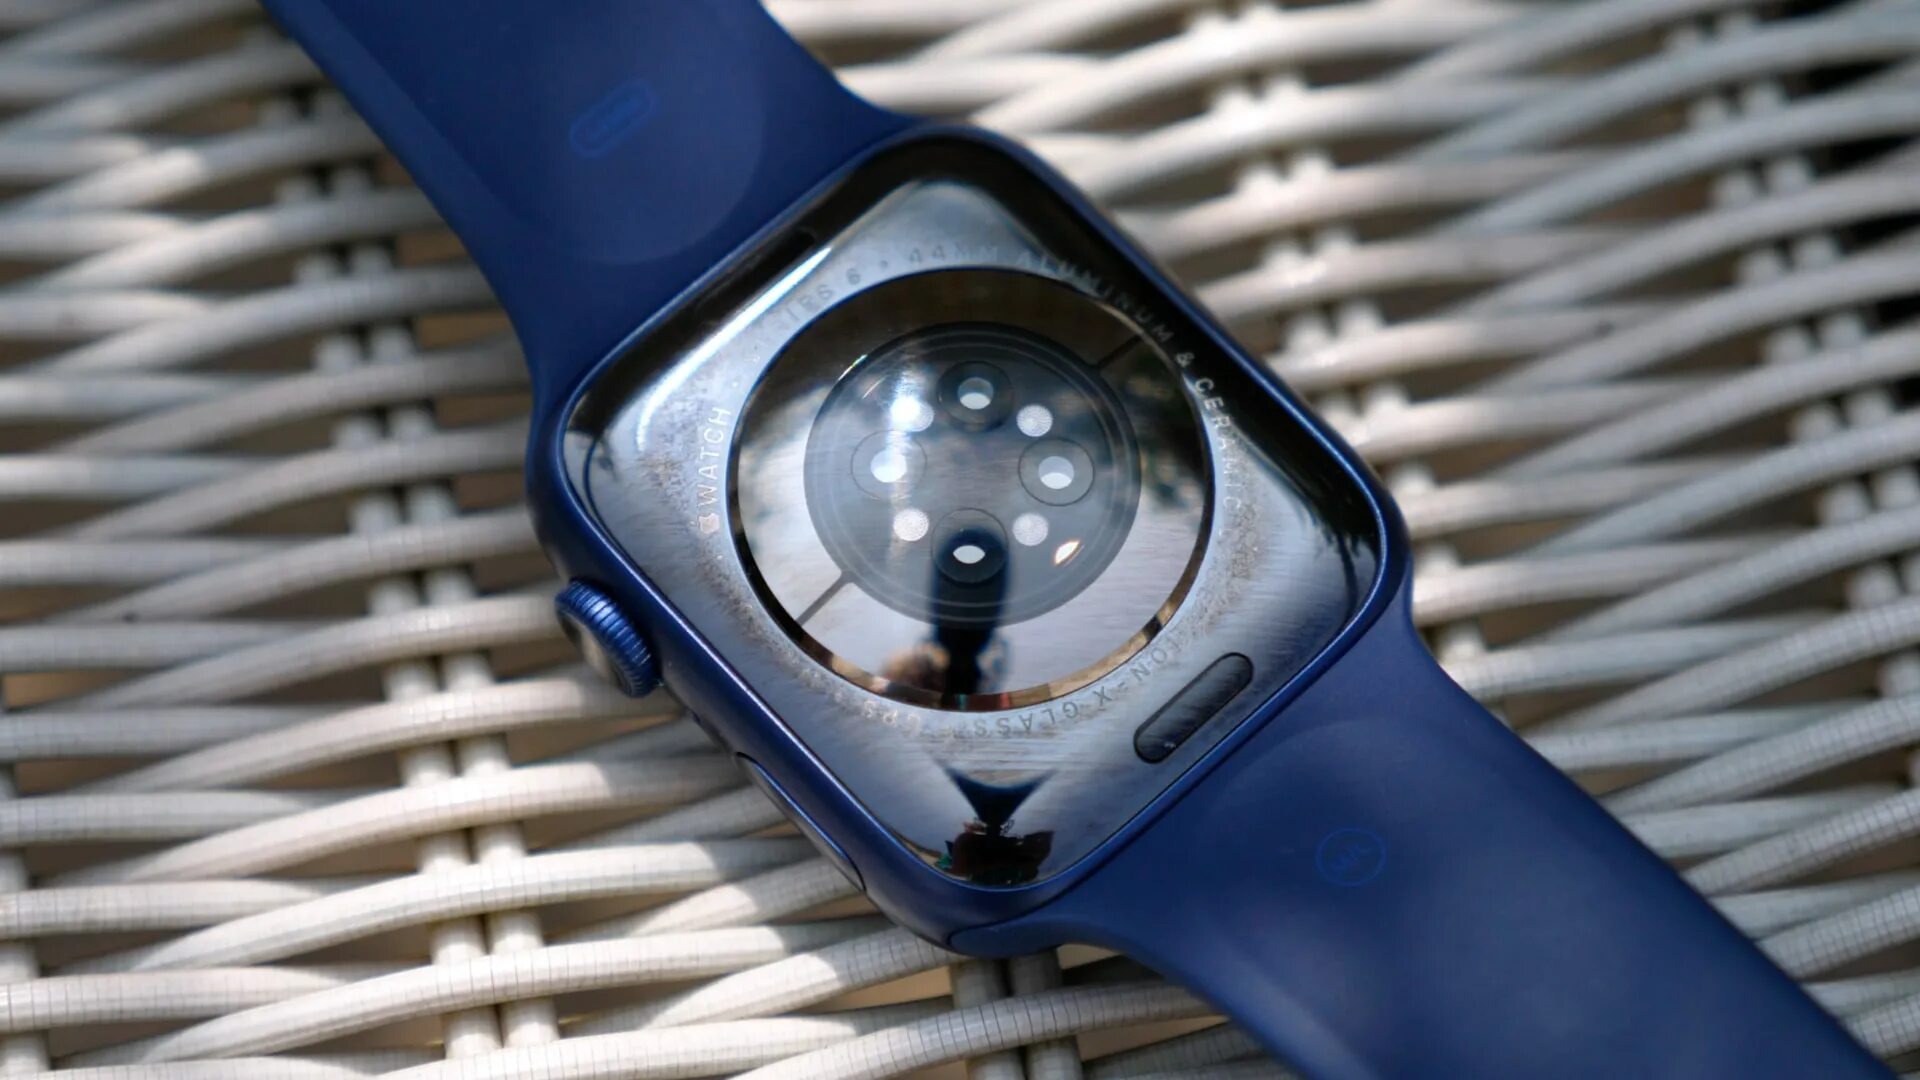 Apple watch 6. Apple watch Series 6 44mm. Apple watch Series 6 44mm Blue. Apple watch 6 44 mm. Series 6 40mm